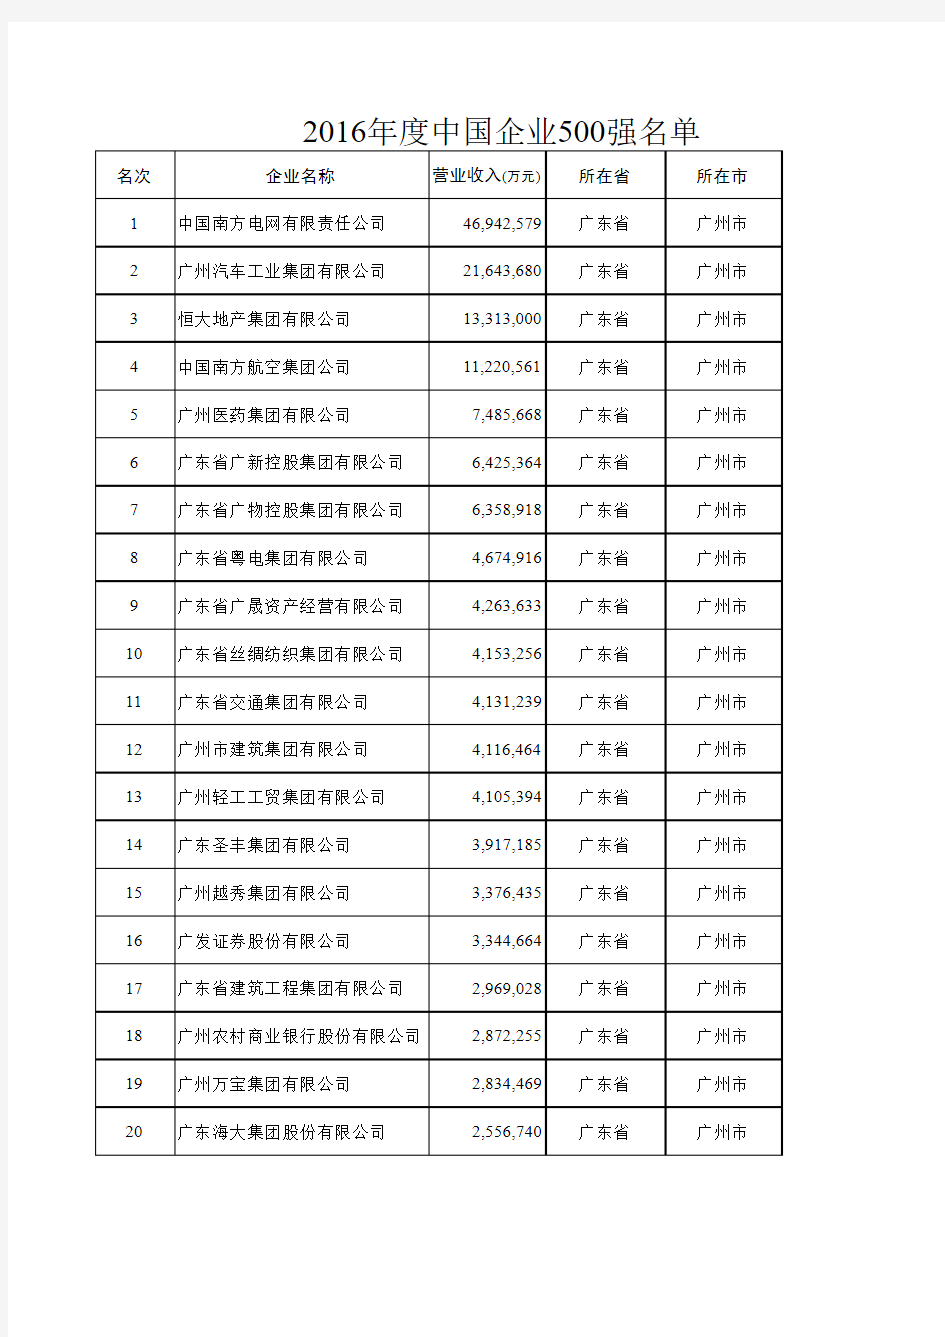 2016中国企业500强名单(广州地区)